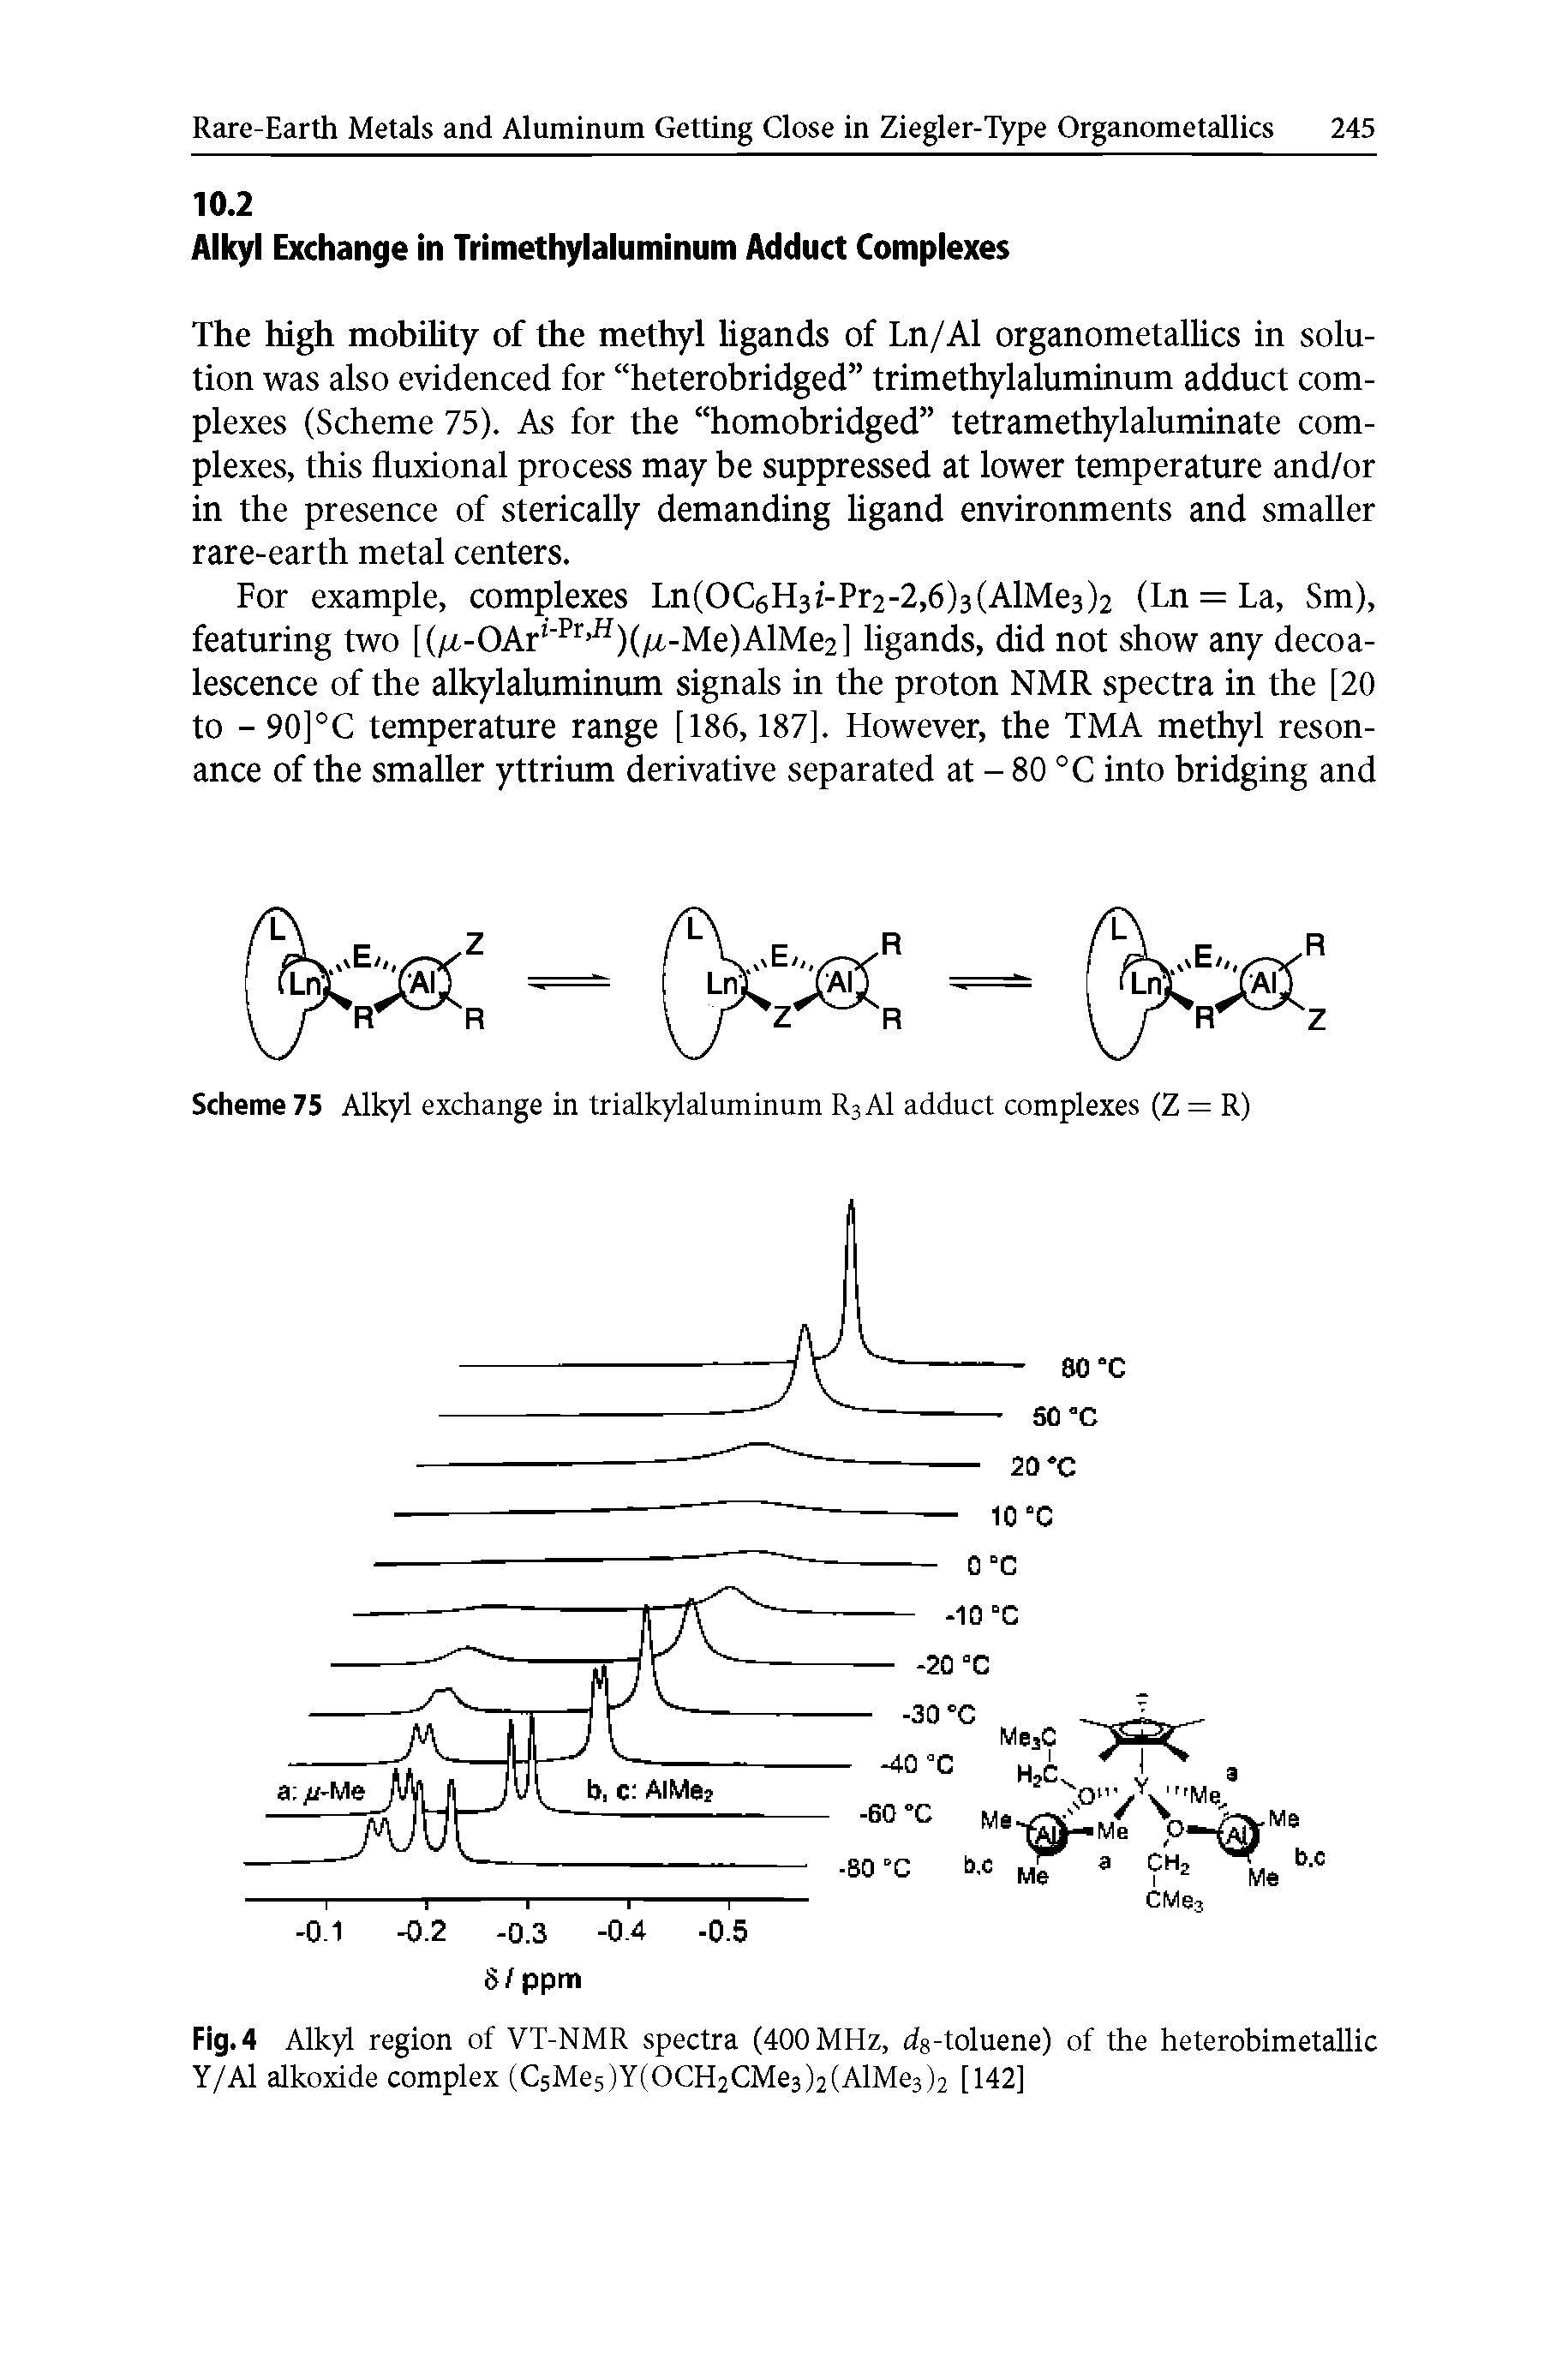 Fig. 4 Alkyl region of VT-NMR spectra (400 MHz, ds-toluene) of the heterobimetallic Y/Al alkoxide complex (C5Me5)Y(OCH2CMe3)2(AlMe3)2 [142]...